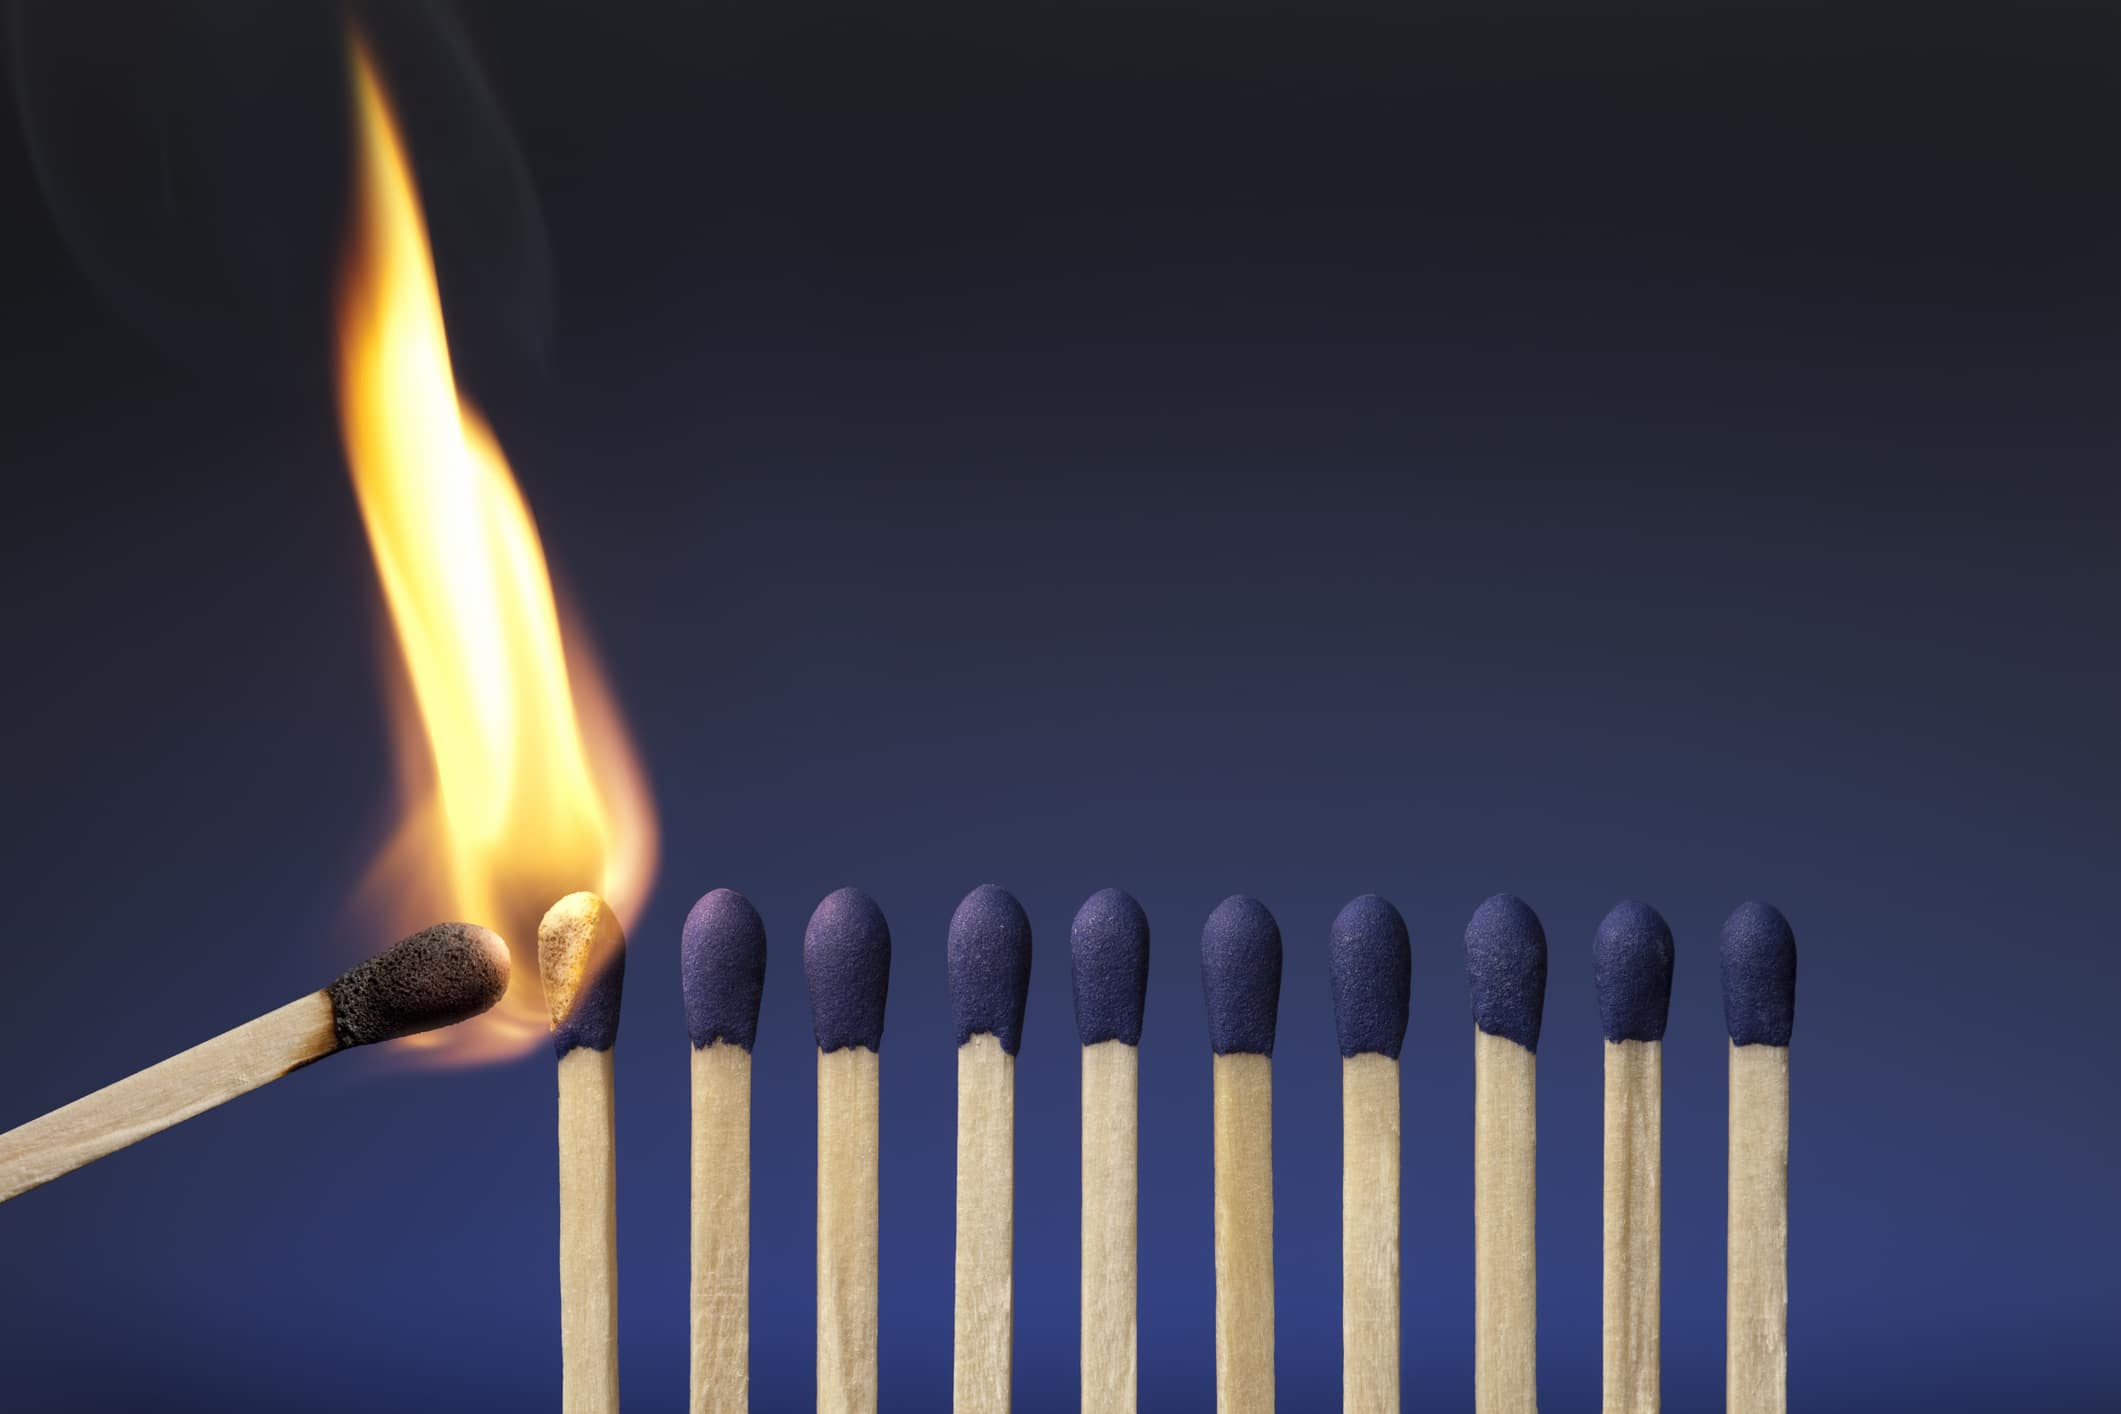 Fileira de fósforos sendo queimados, representando a síndrome de burnout